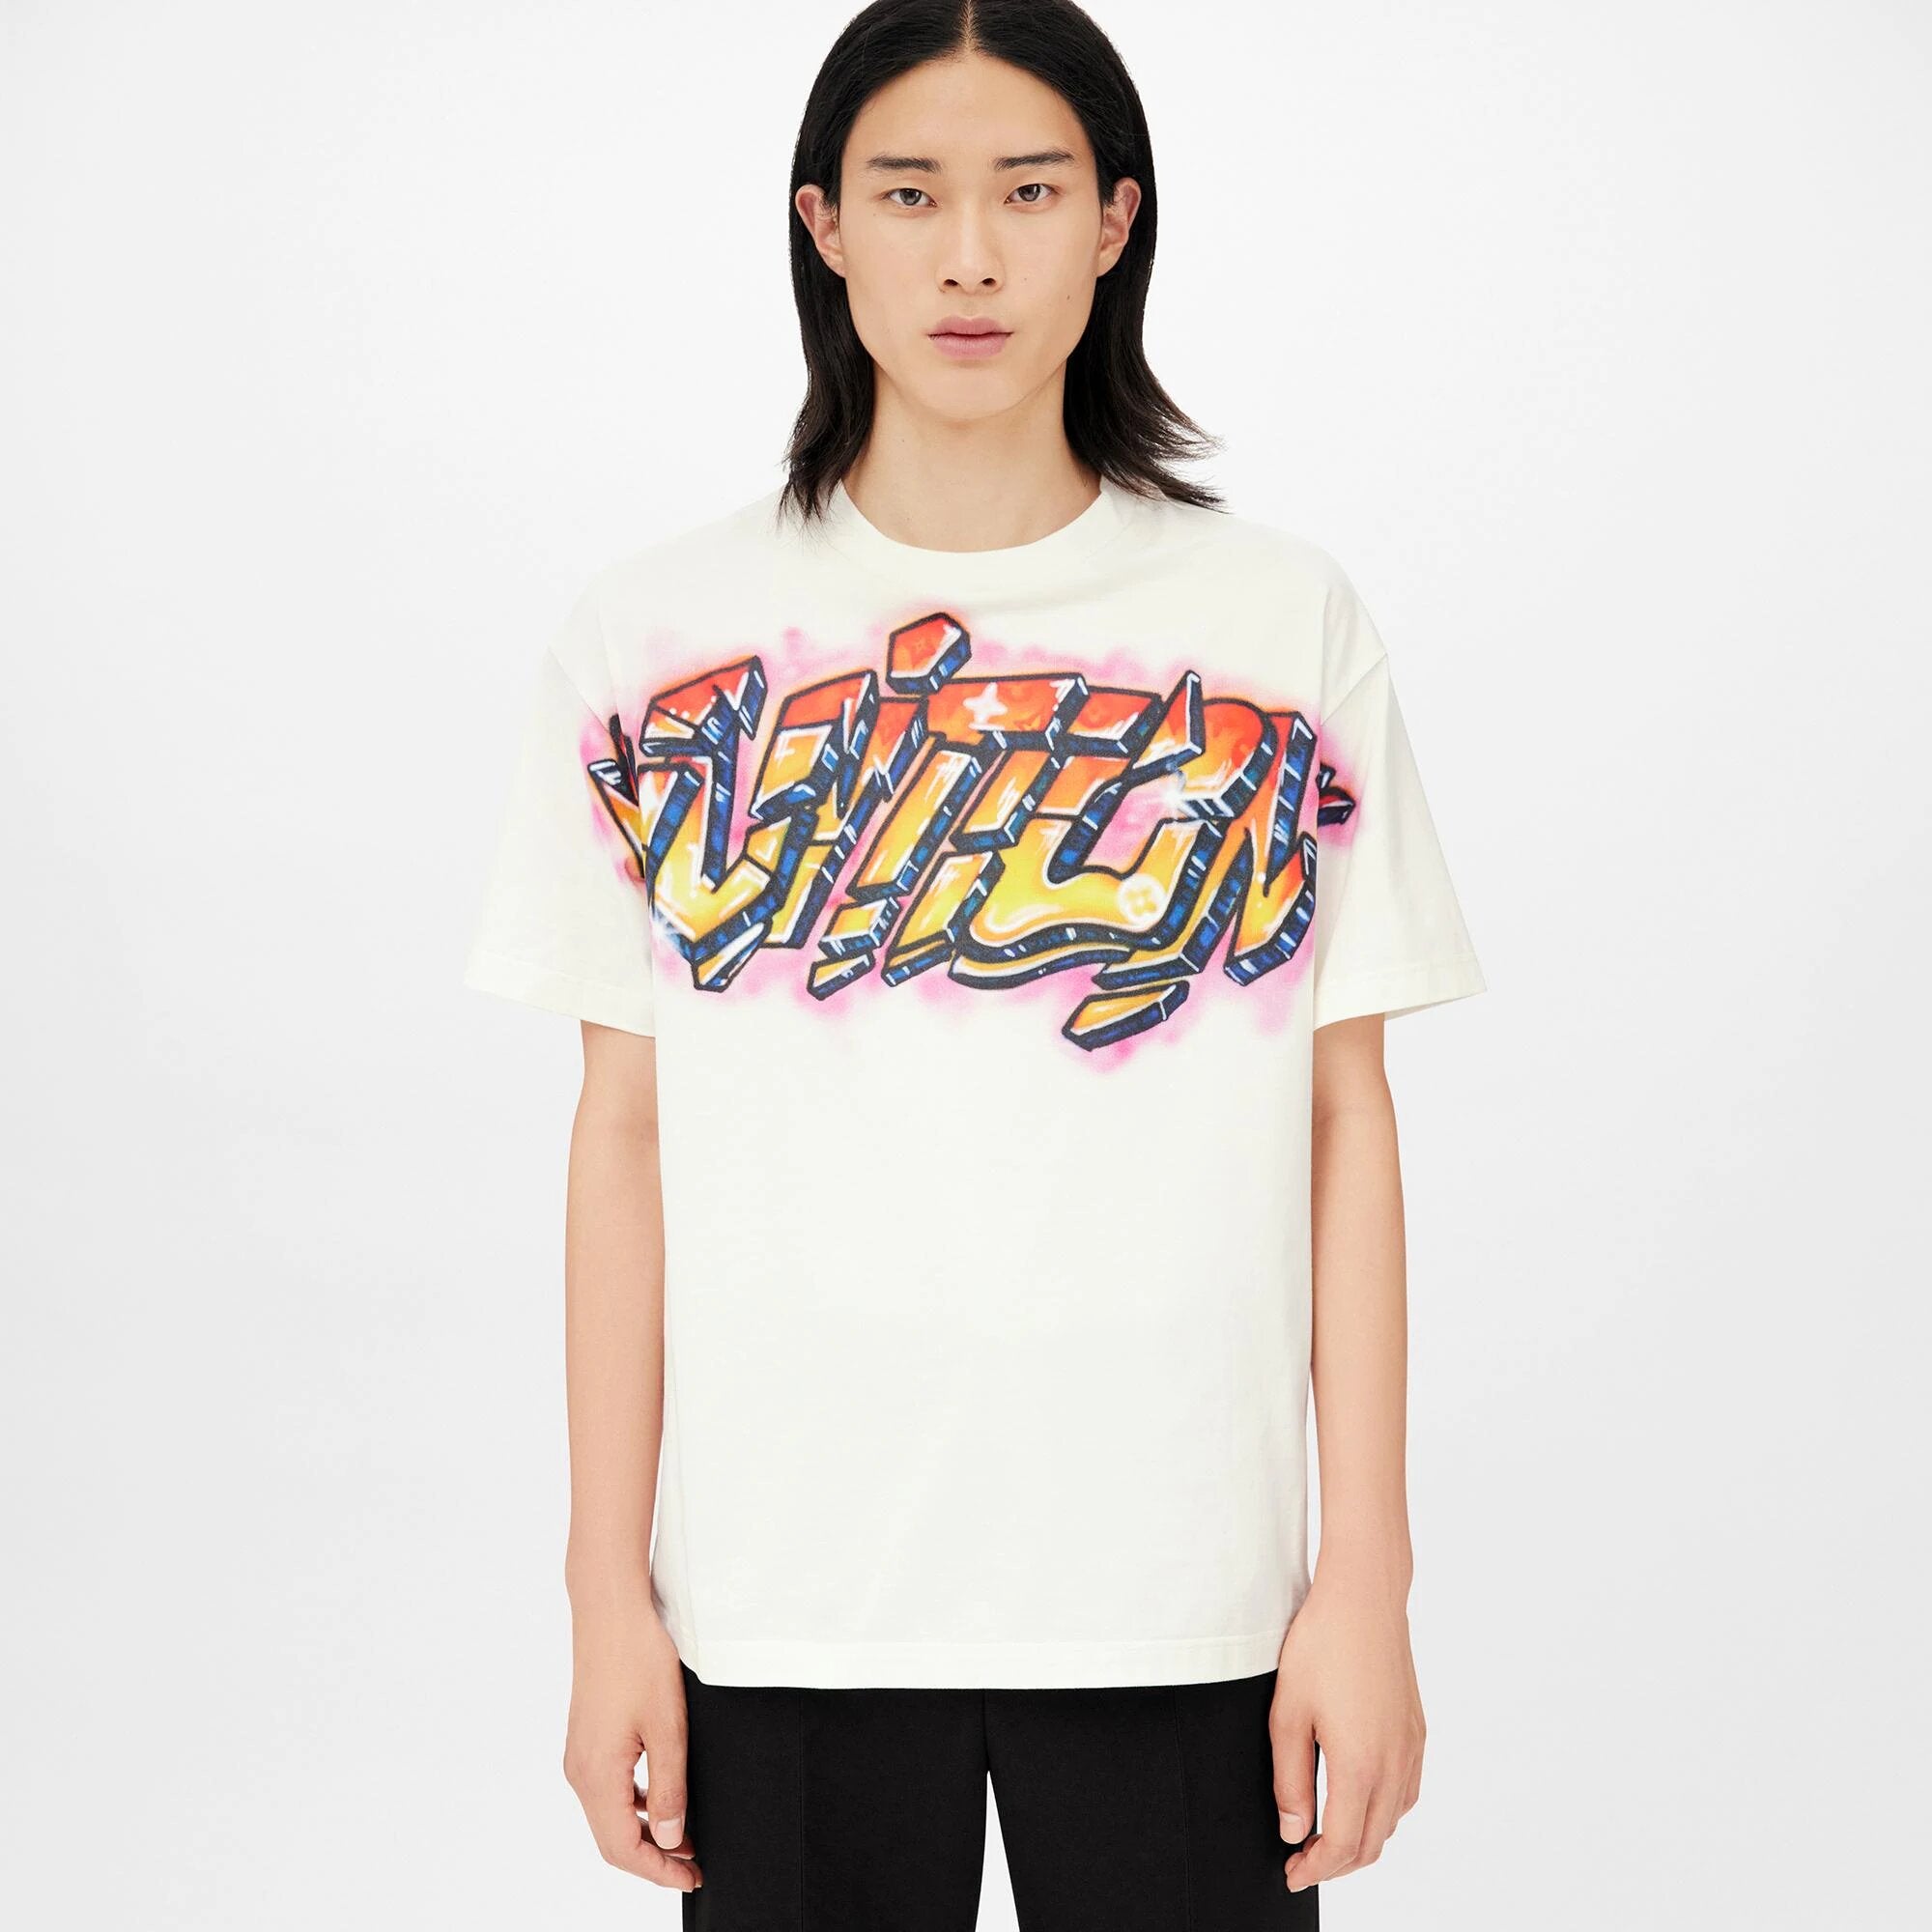 Louis Vuitton Graffiti TShirt Mens Fashion Tops  Sets Tshirts  Polo  Shirts on Carousell